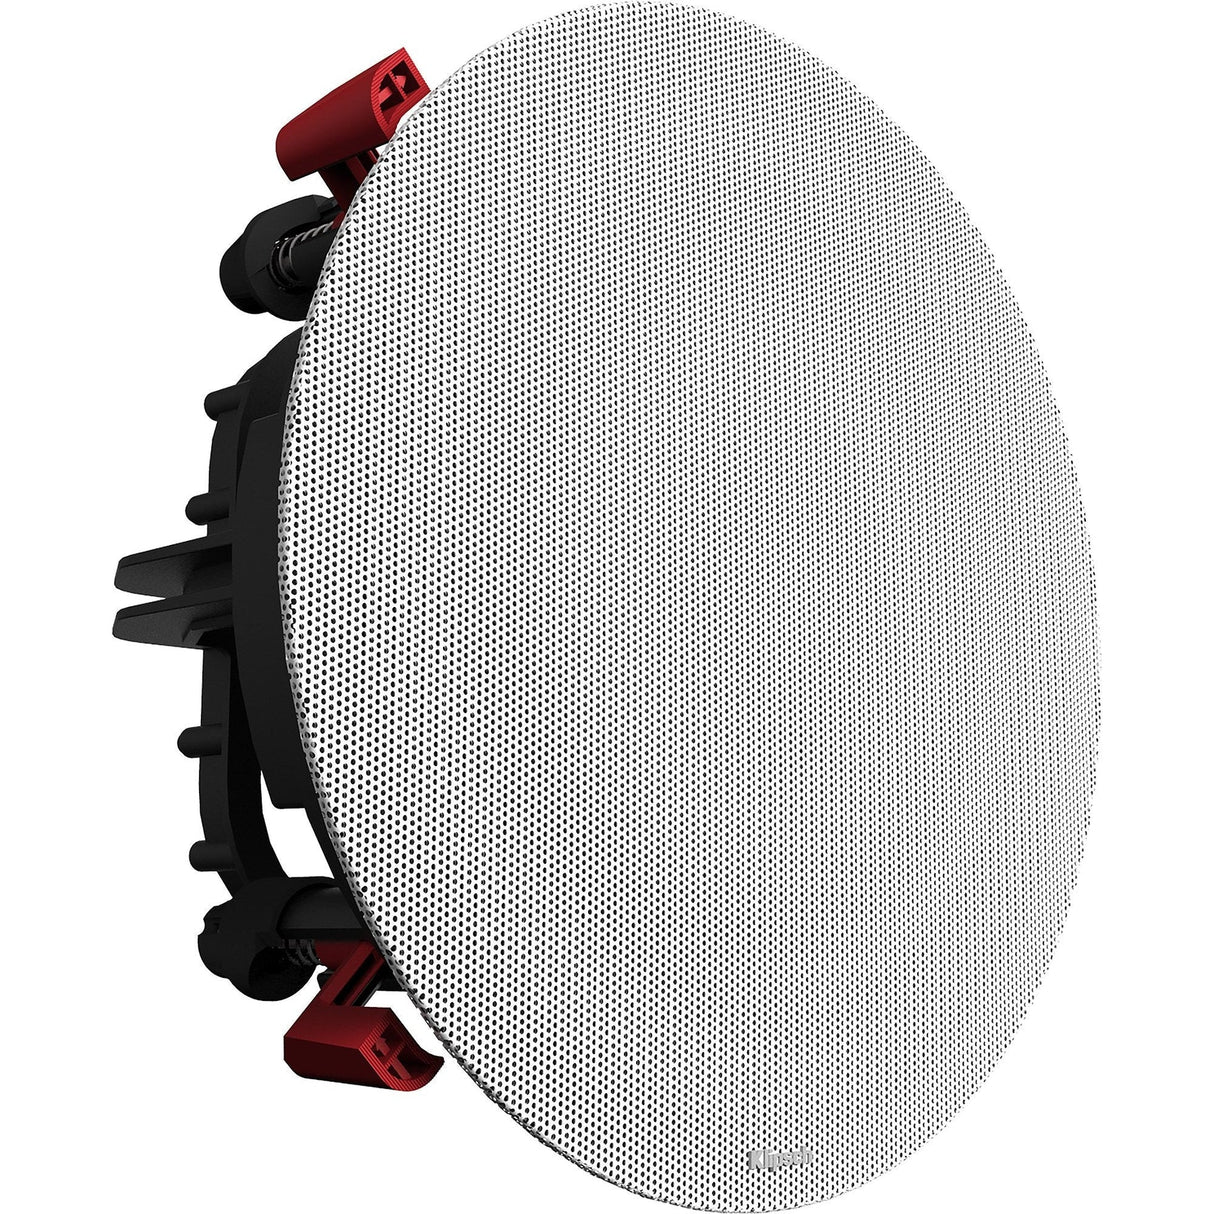 Klipsch PRO-18-RC 8" In-Ceiling Speaker – Each